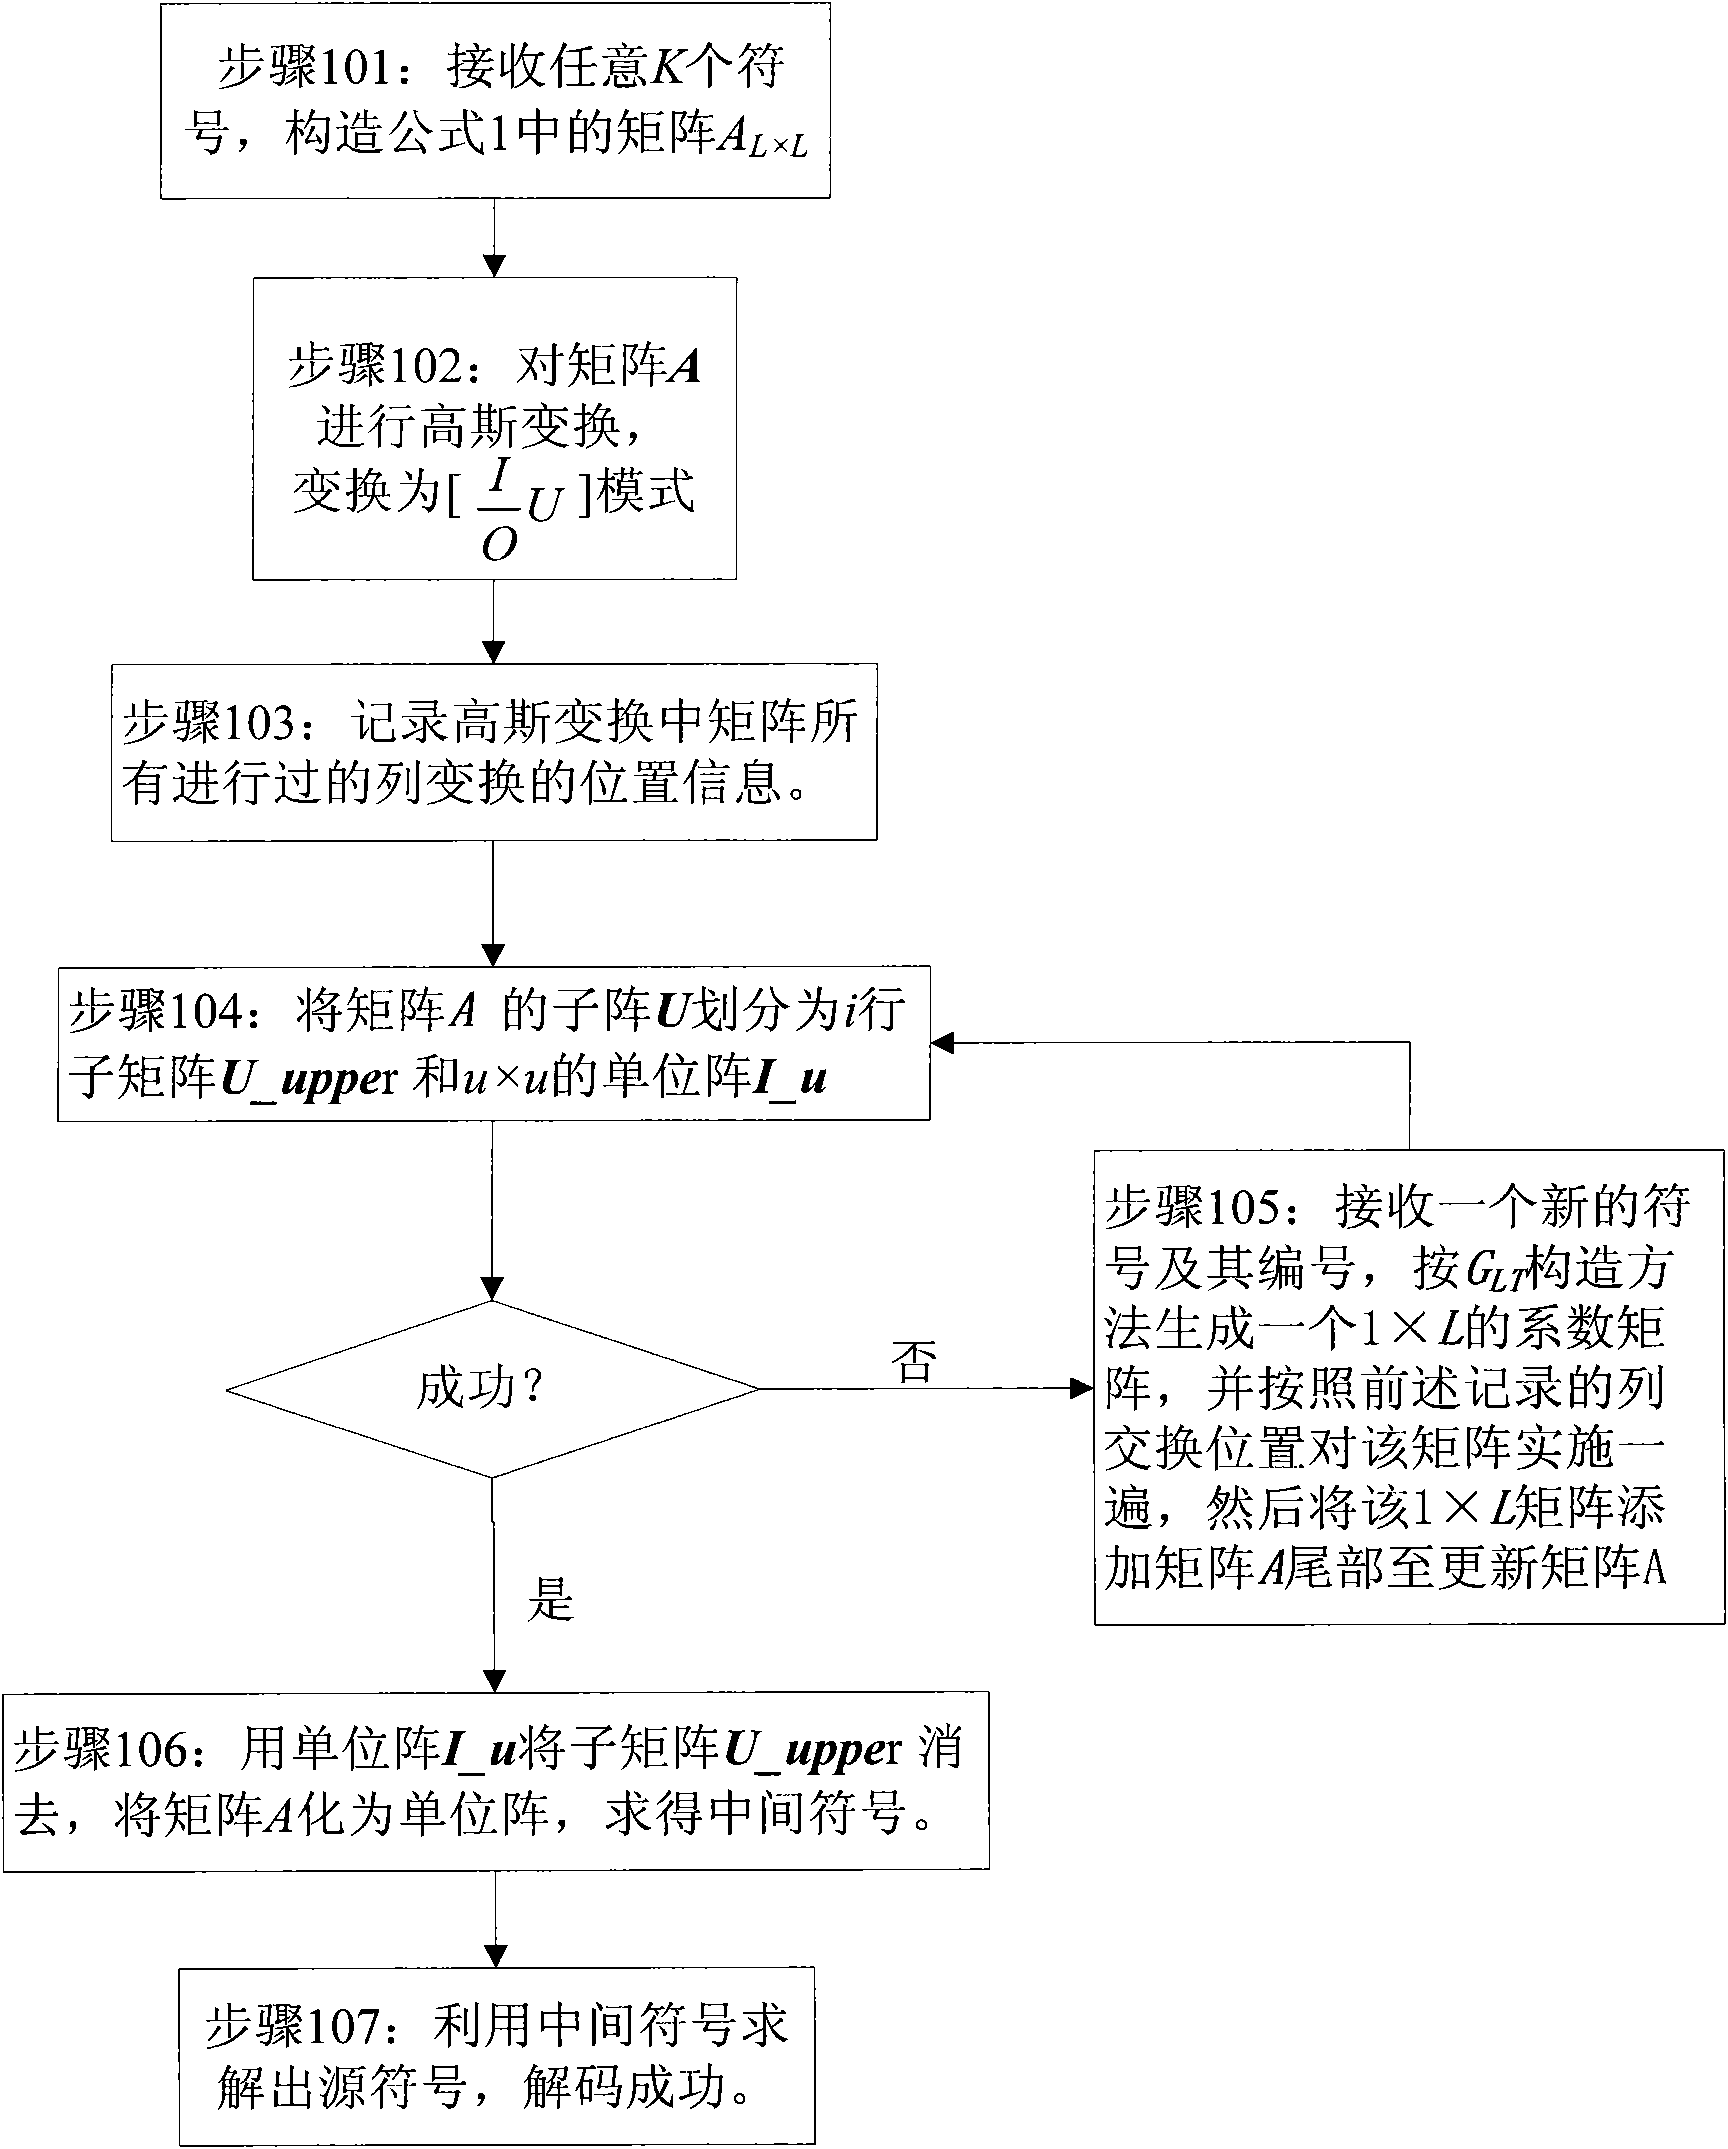 Decoding method of Raptor code